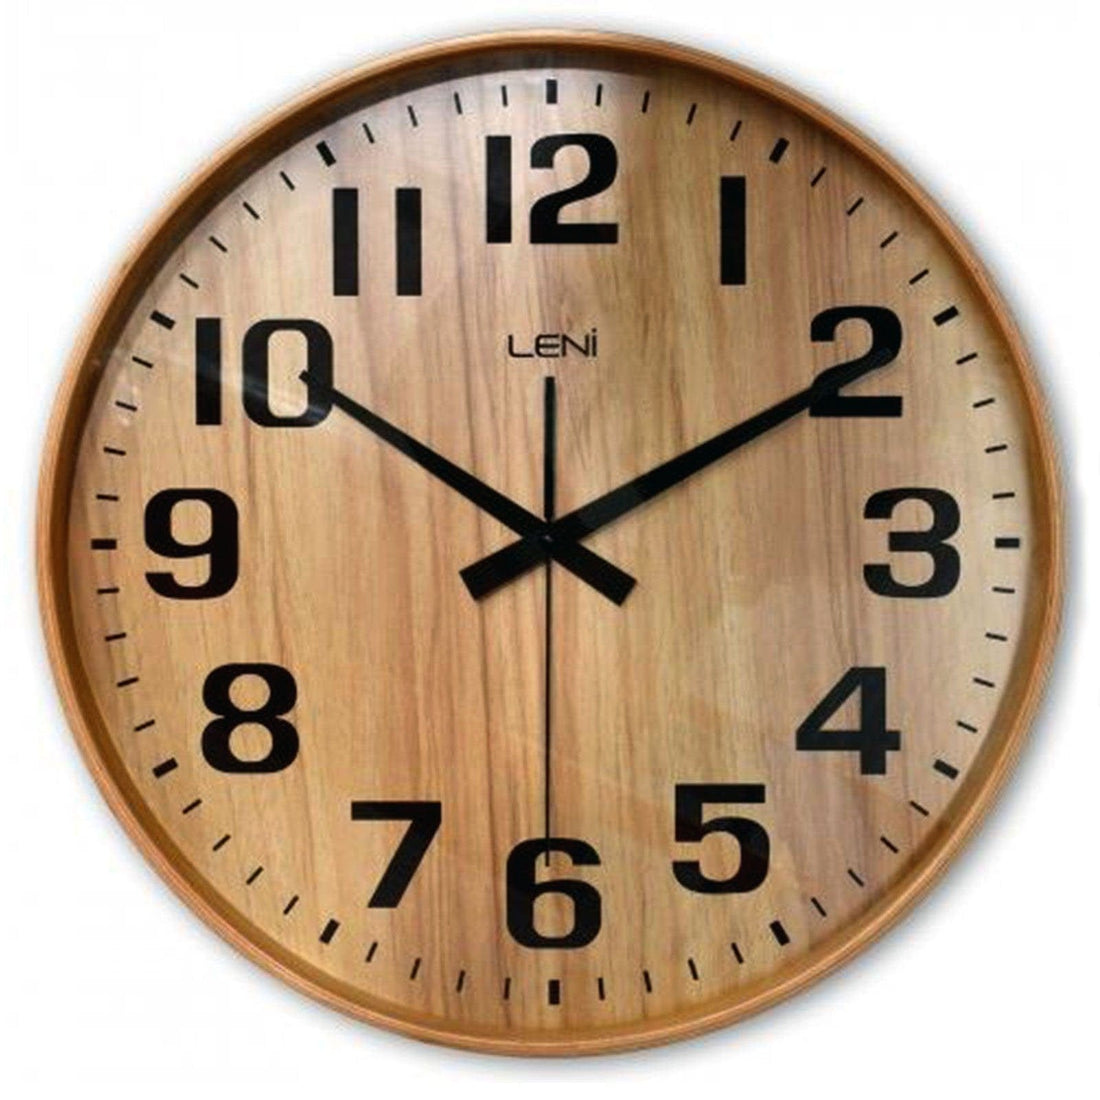 28cm Leni Wood Wall Clock - Nature.